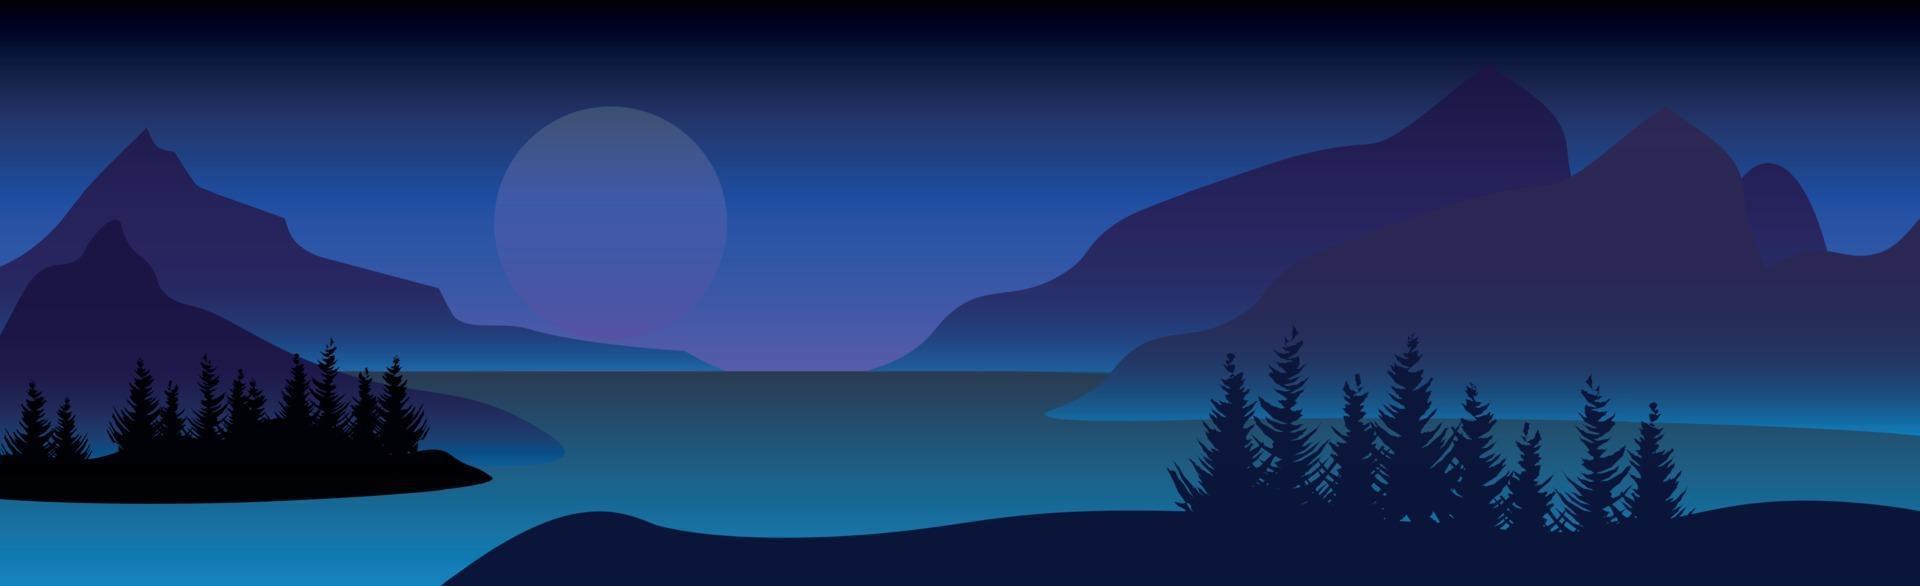 berglandschap, stralende maan over nacht bergmeer - vector